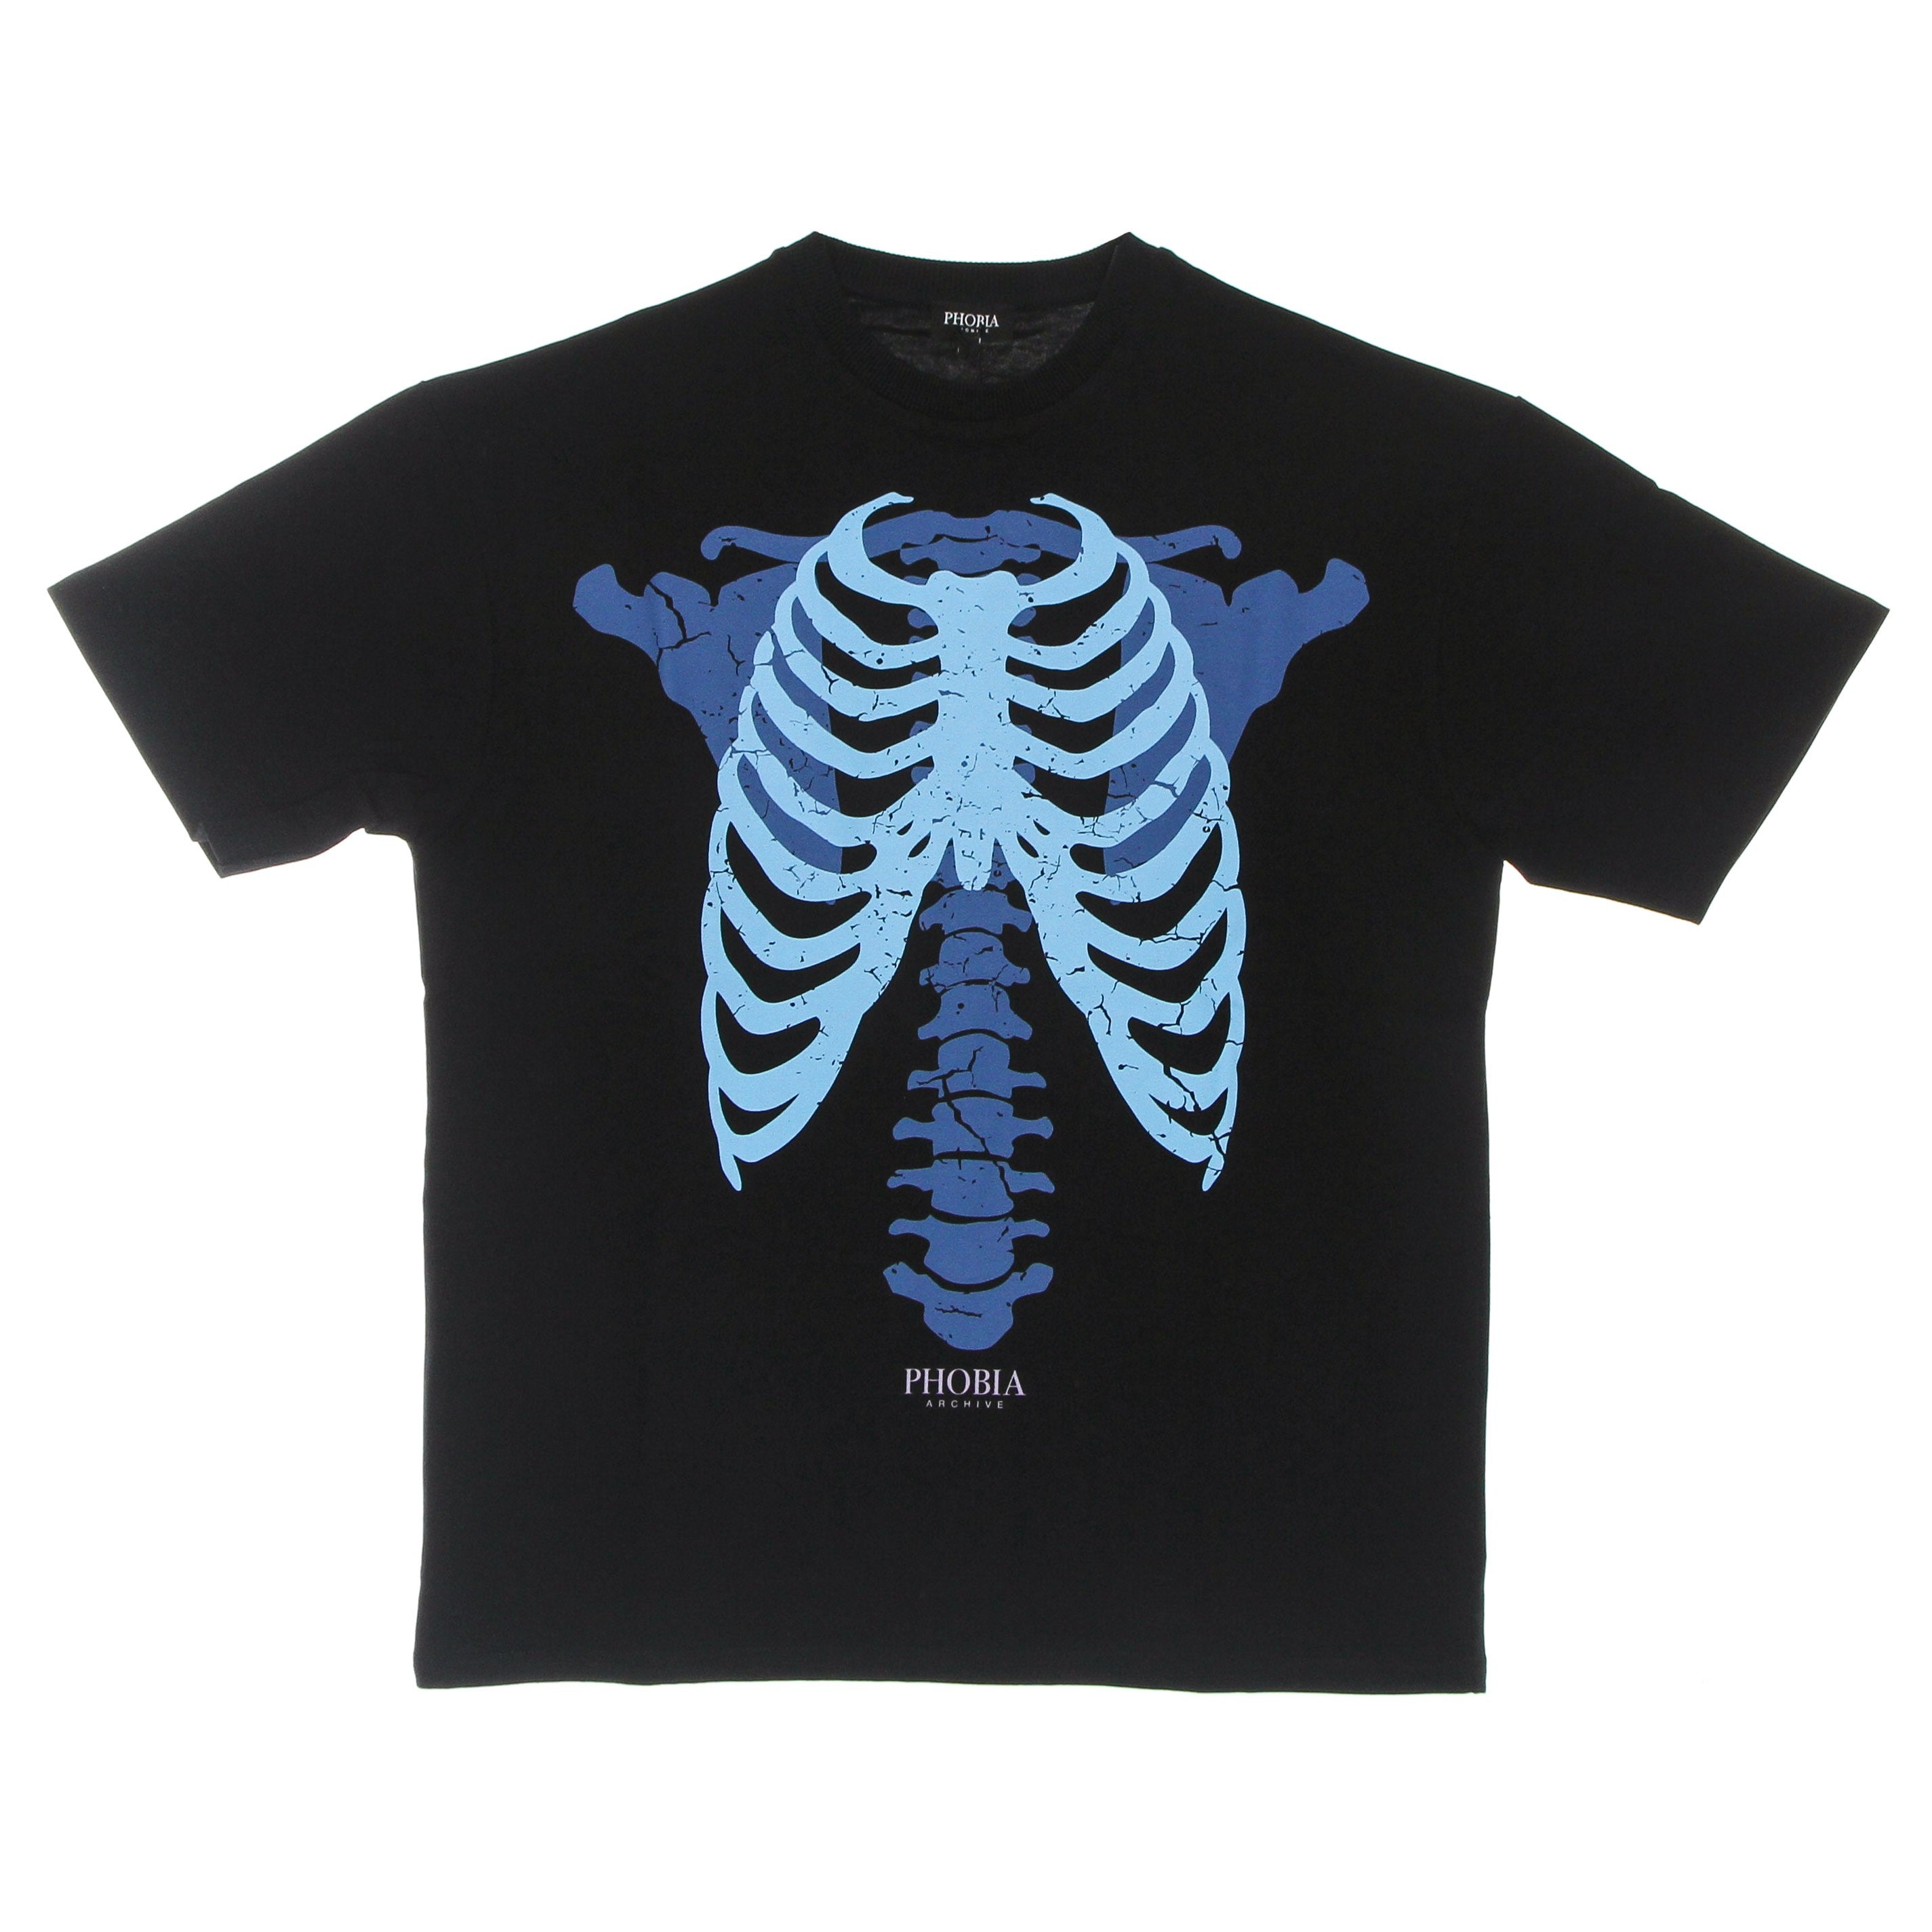 Phobia, Maglietta Uomo Skeleton Print Tee, Black/blue